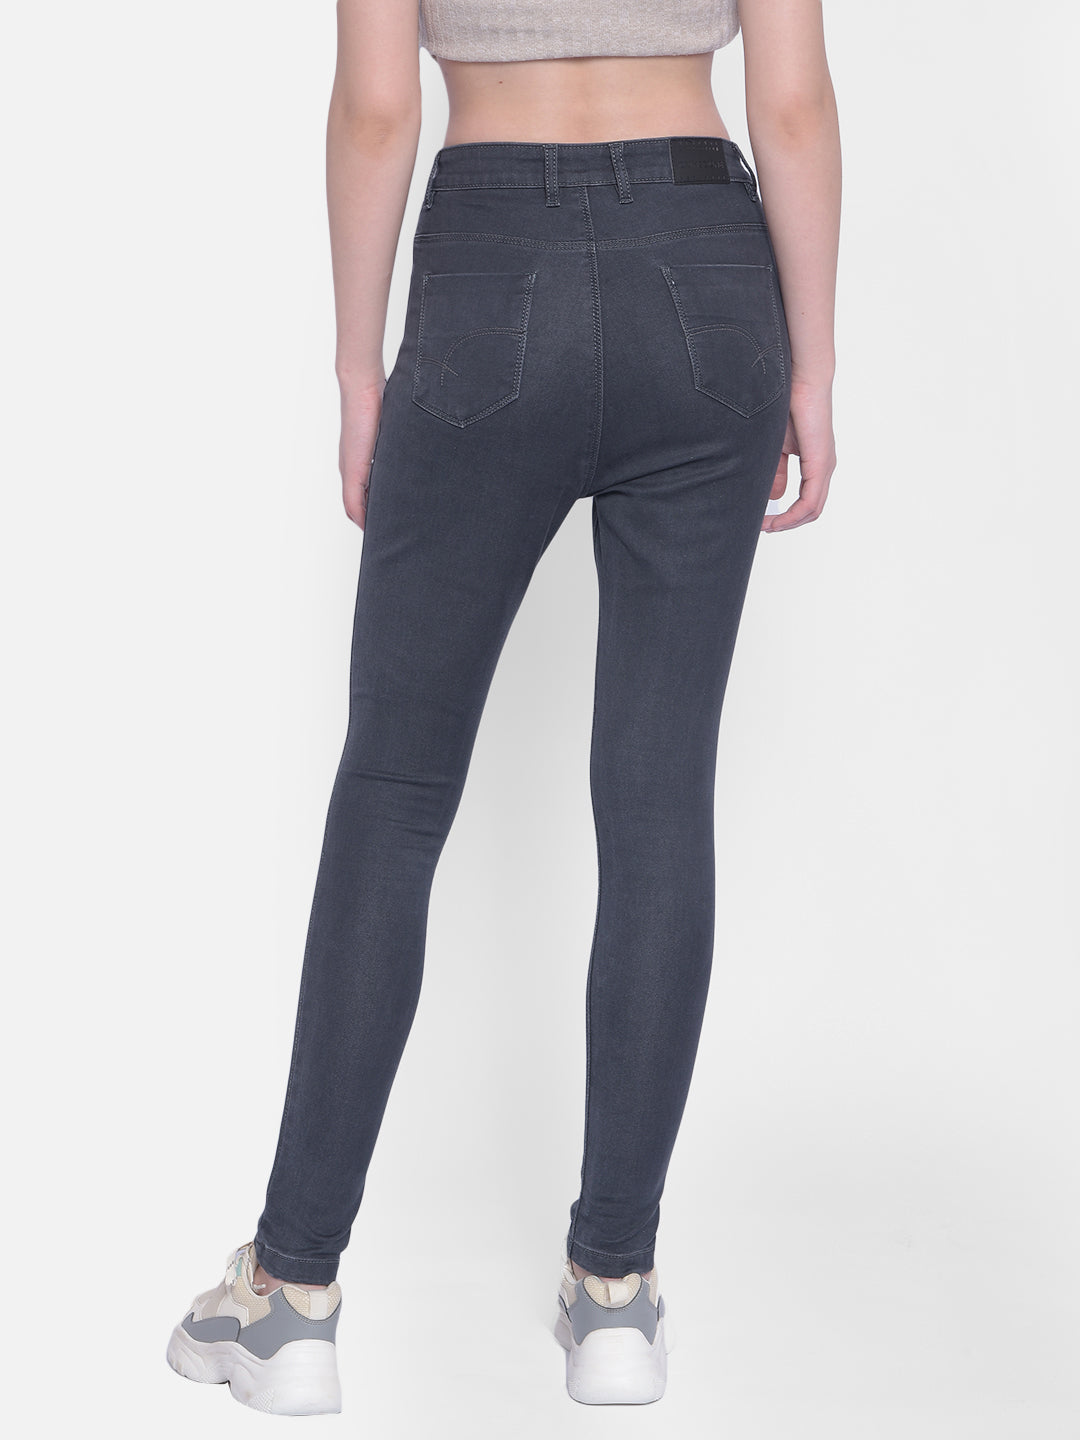 Grey High Waist Jeans-Women Jeans-Crimsoune Club